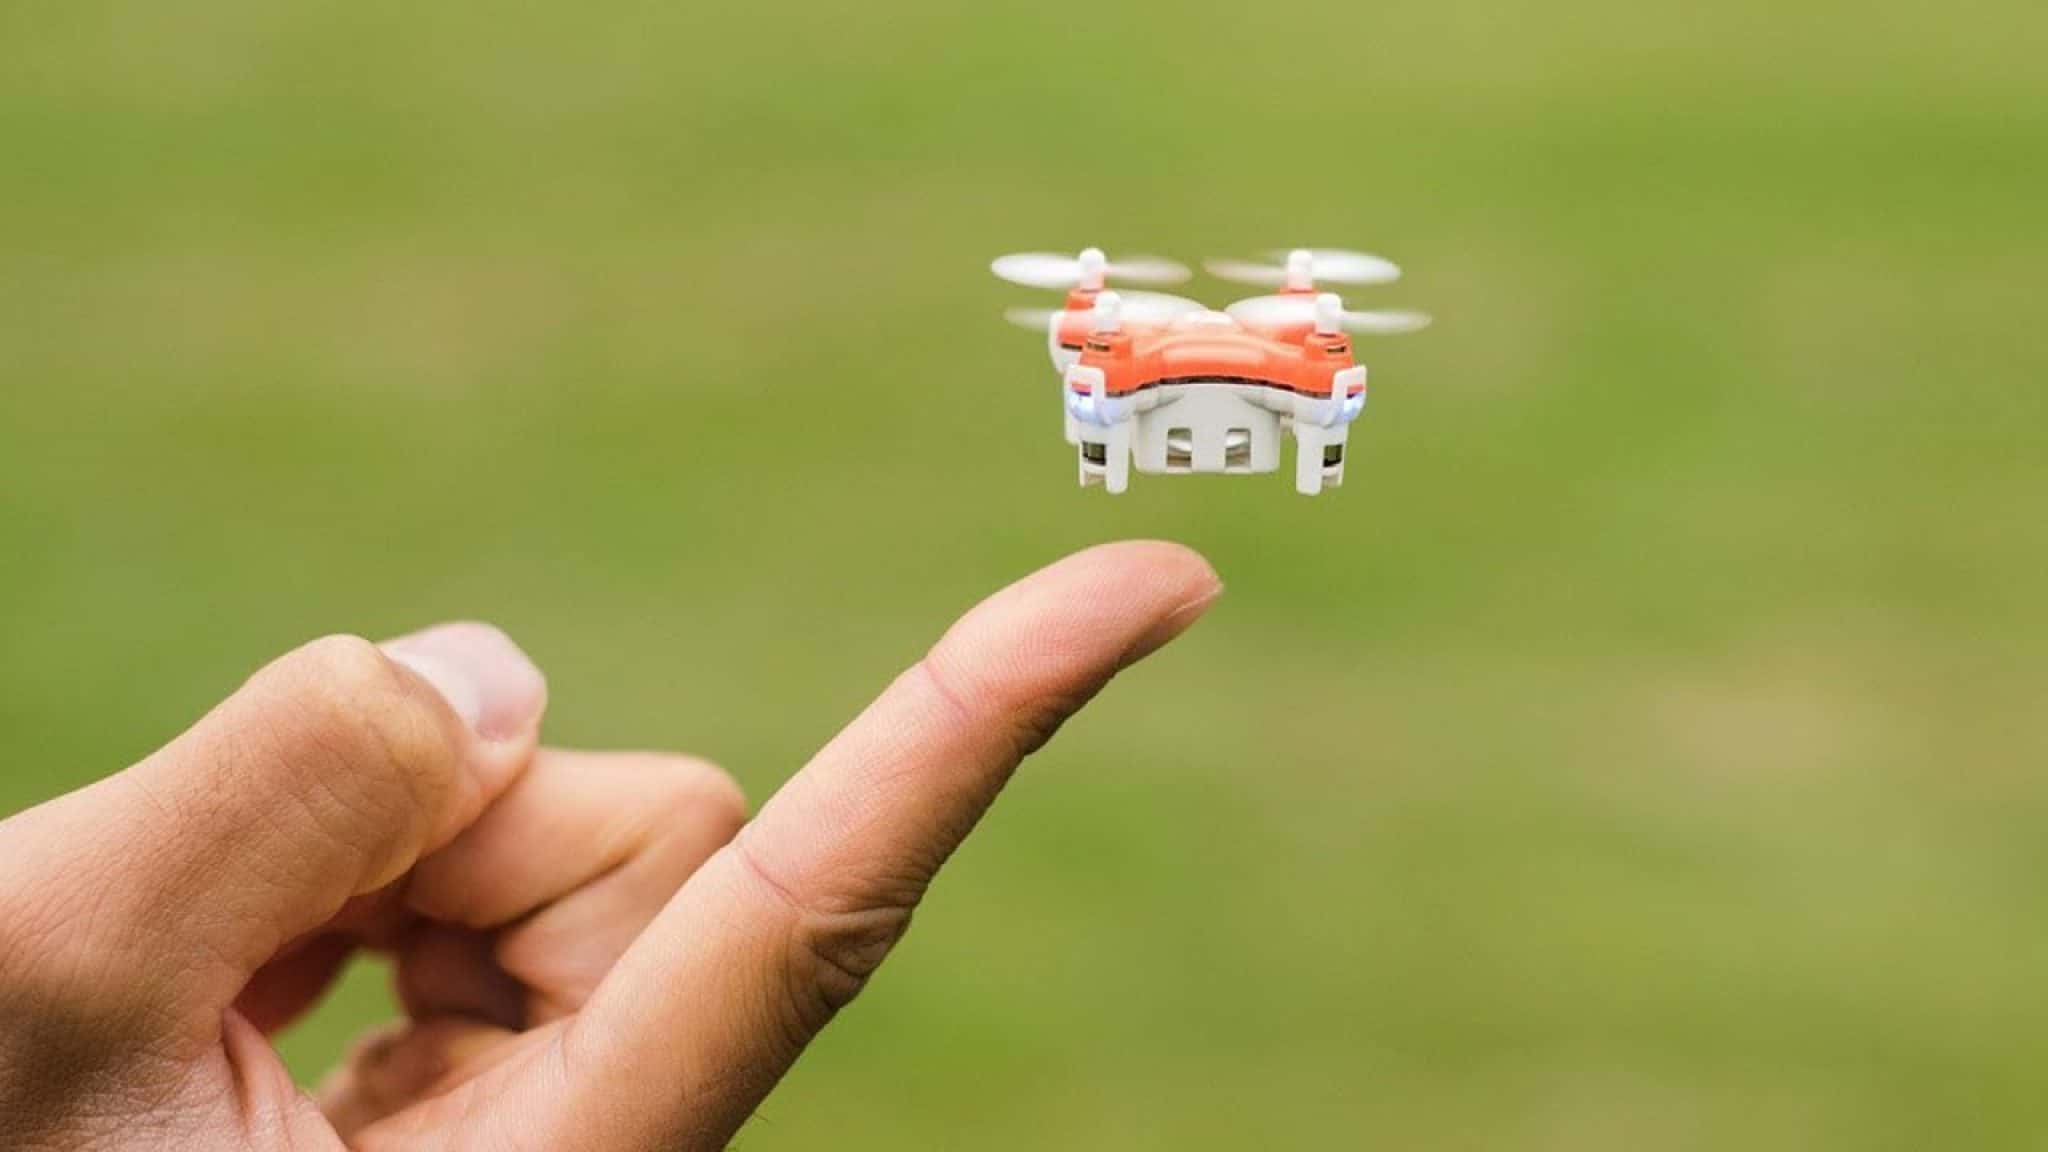  Walkera Mini dron con cámara 4K para adultos – T210 RC  Quadcopter con retorno automático GPS, cardán de 3 ejes, sígueme, puntos de  ruta, vuelo circular, 30 minutos de tiempo de